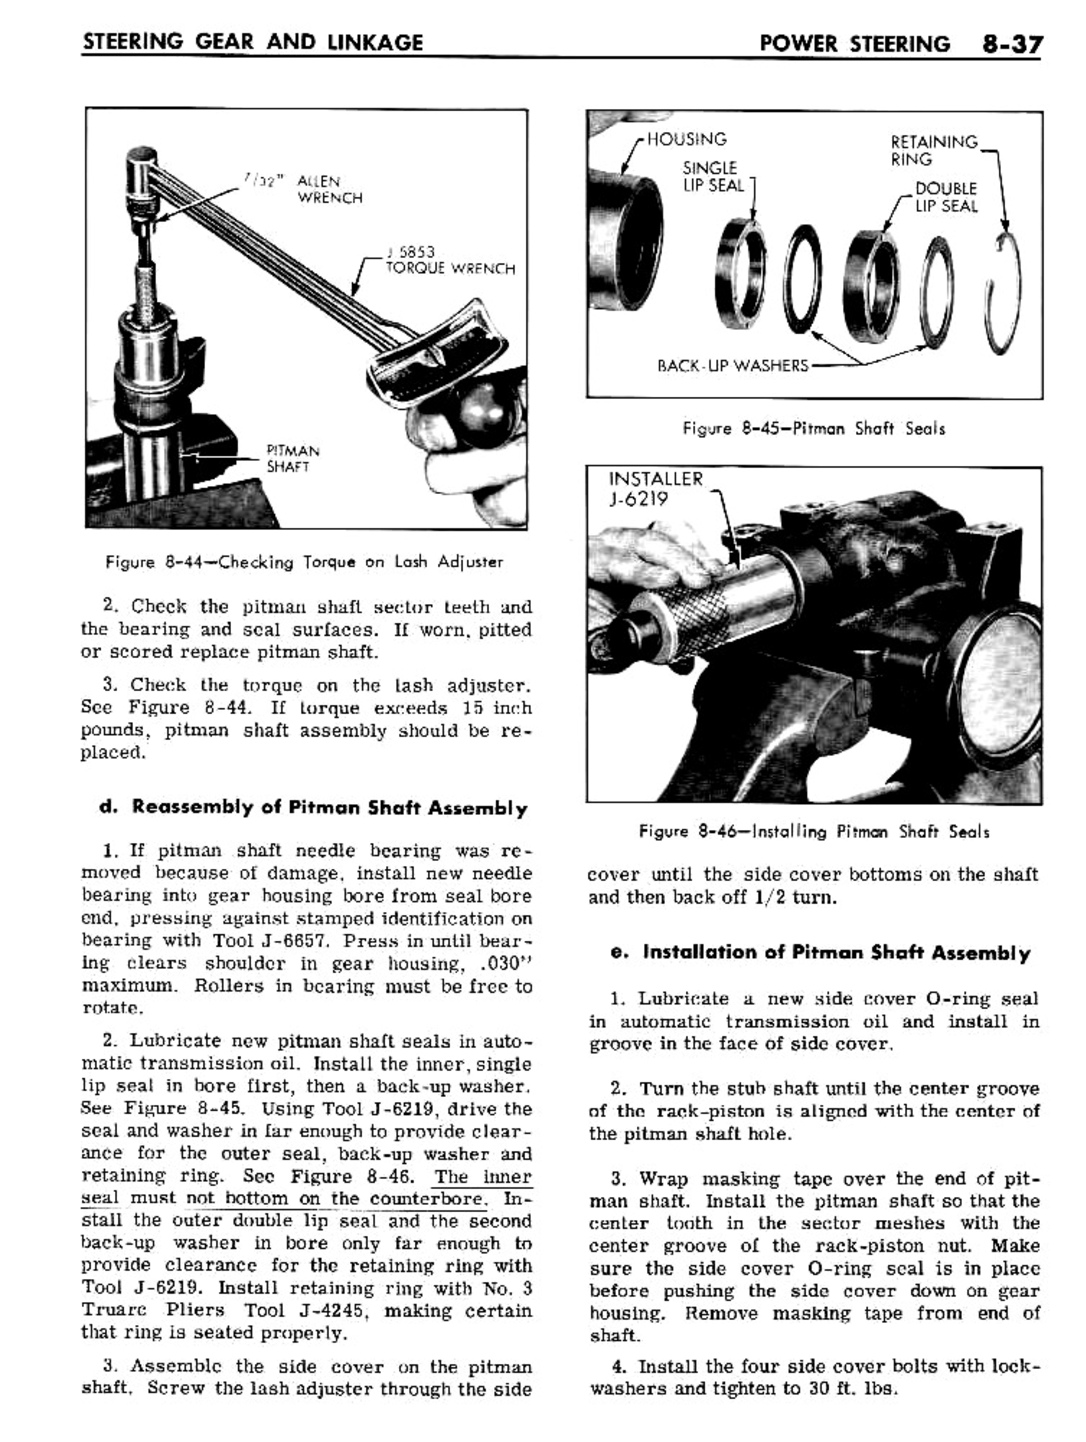 n_08 1961 Buick Shop Manual - Steering-037-037.jpg